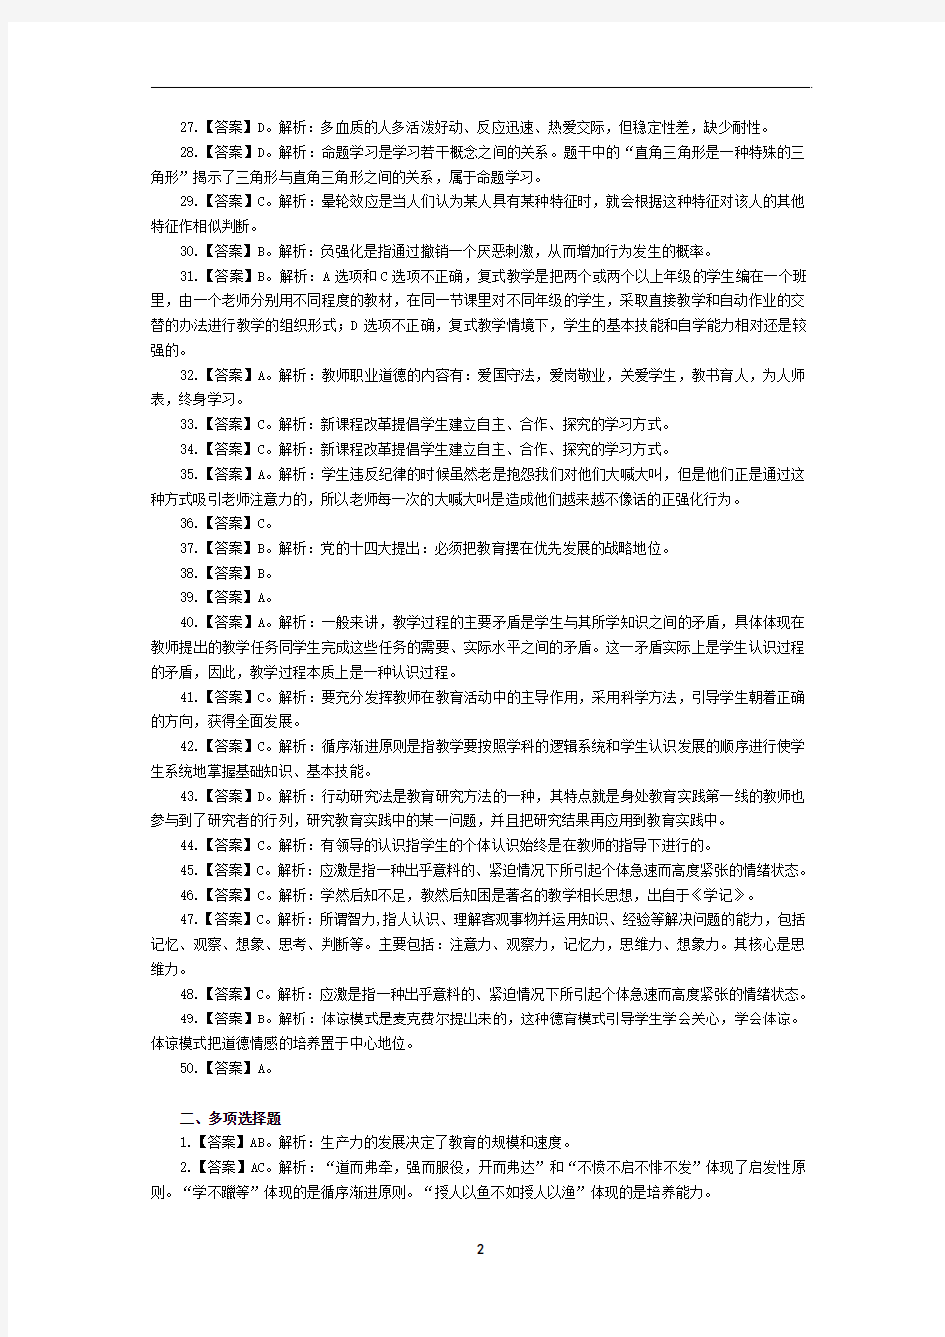 2017年河北教师招聘笔试备考手册答案